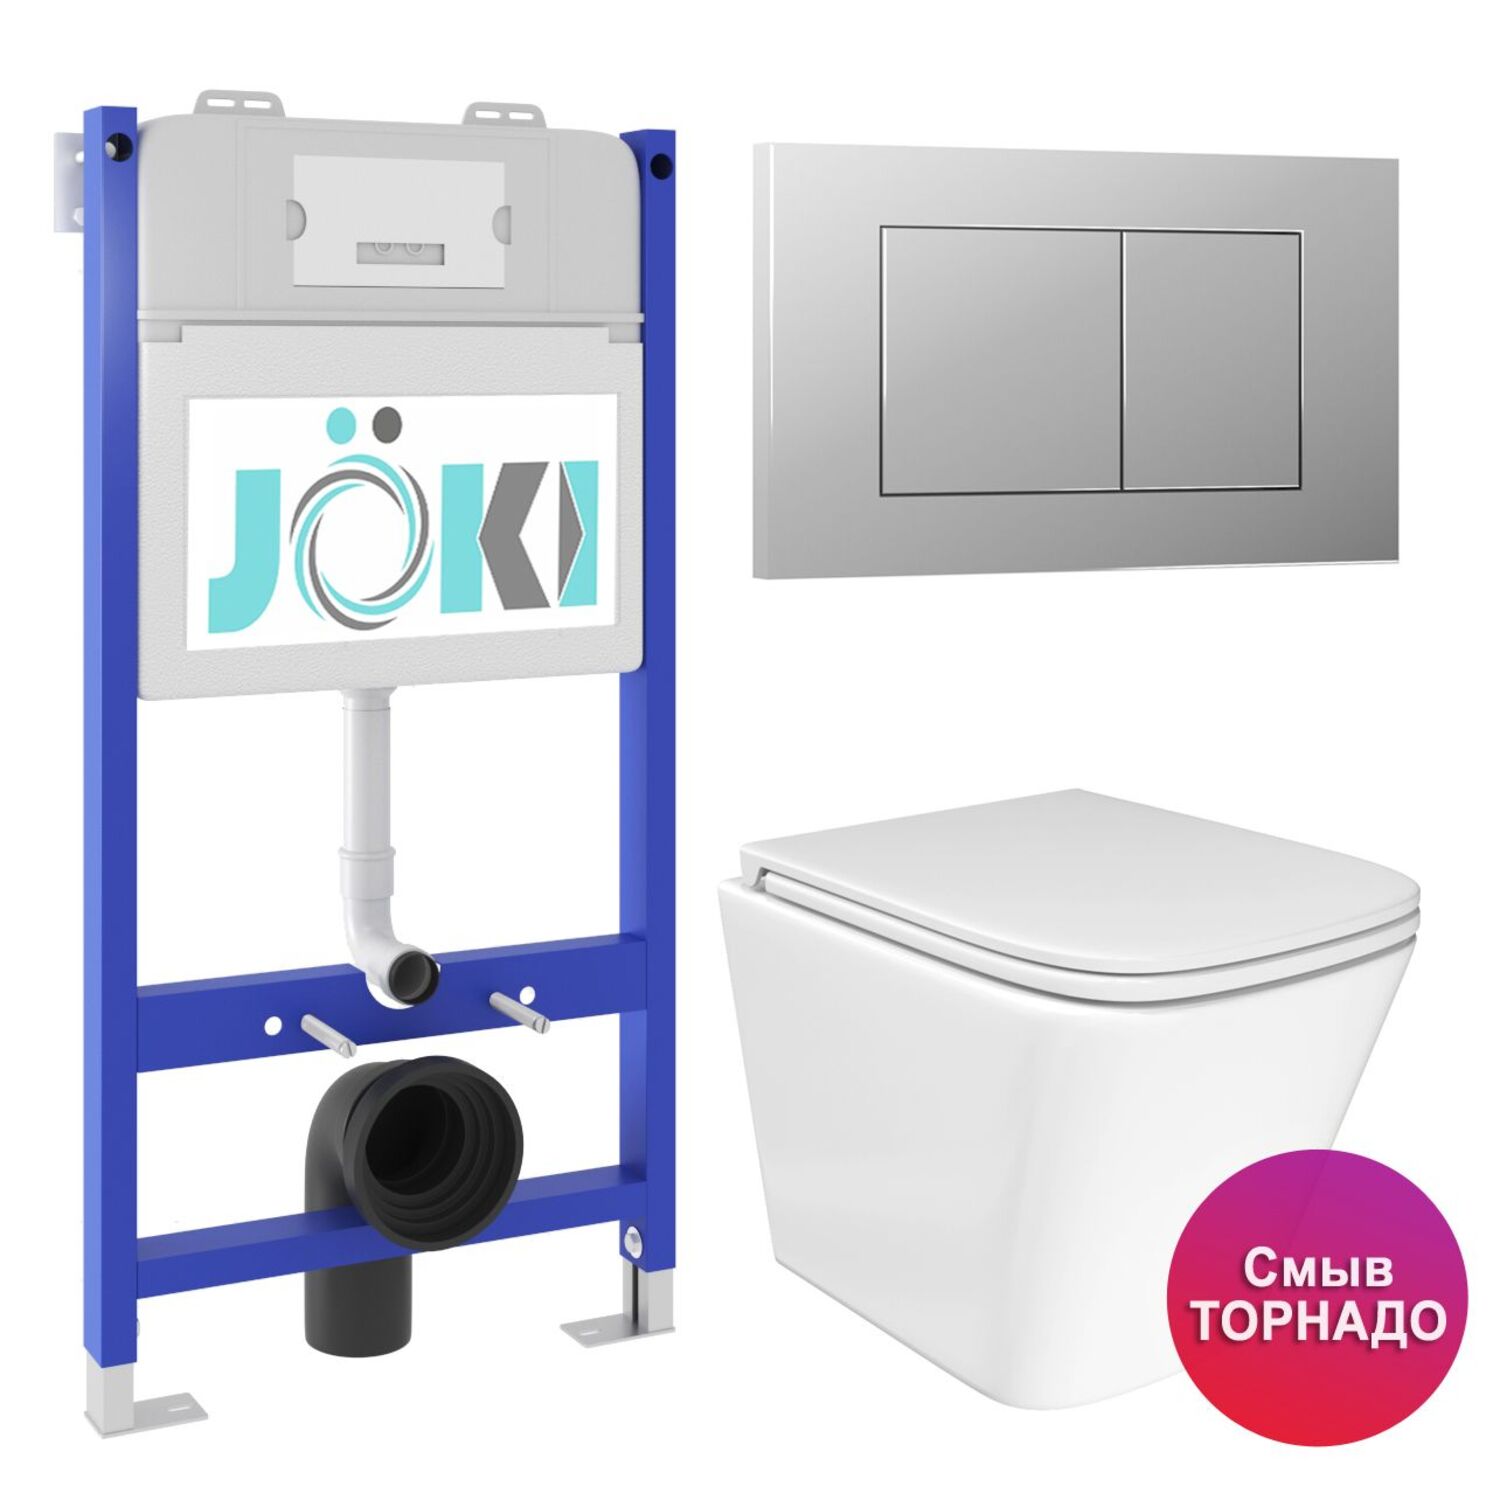 Комплект: JOKI Инсталляция JK03351+Кнопка JK012519CH хром+Verna T JK3031025 унитаз белый, смыв Торнадо